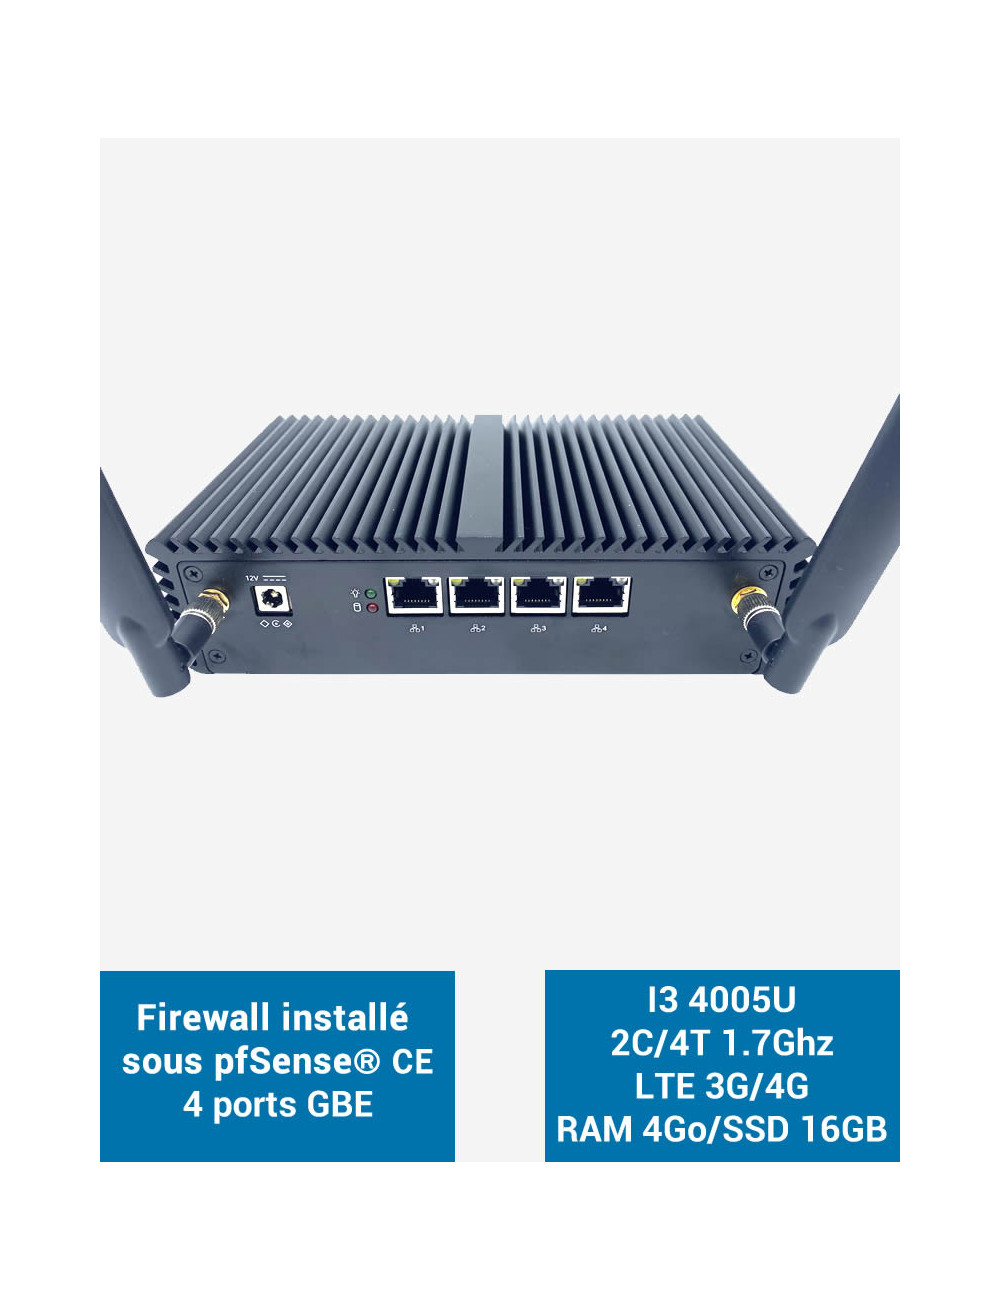 Firewall pfSense® Q3x I3 4005U 4 ports Gigabit LTE 4G 4GB SSD 16GB